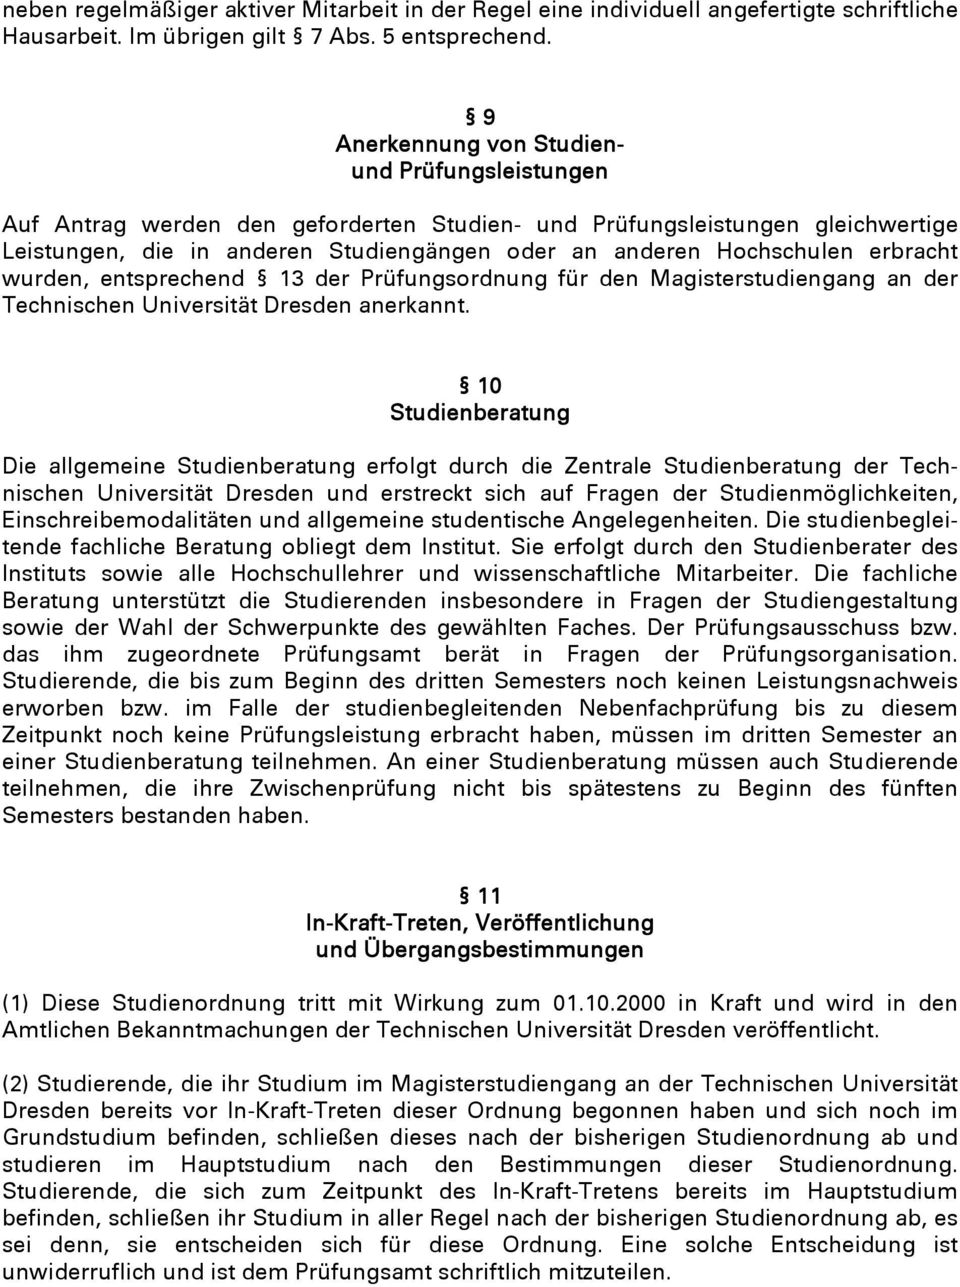 erbracht wurden, entsprechend 13 der Prüfungsordnung für den Magisterstudiengang an der Technischen Universität Dresden anerkannt.